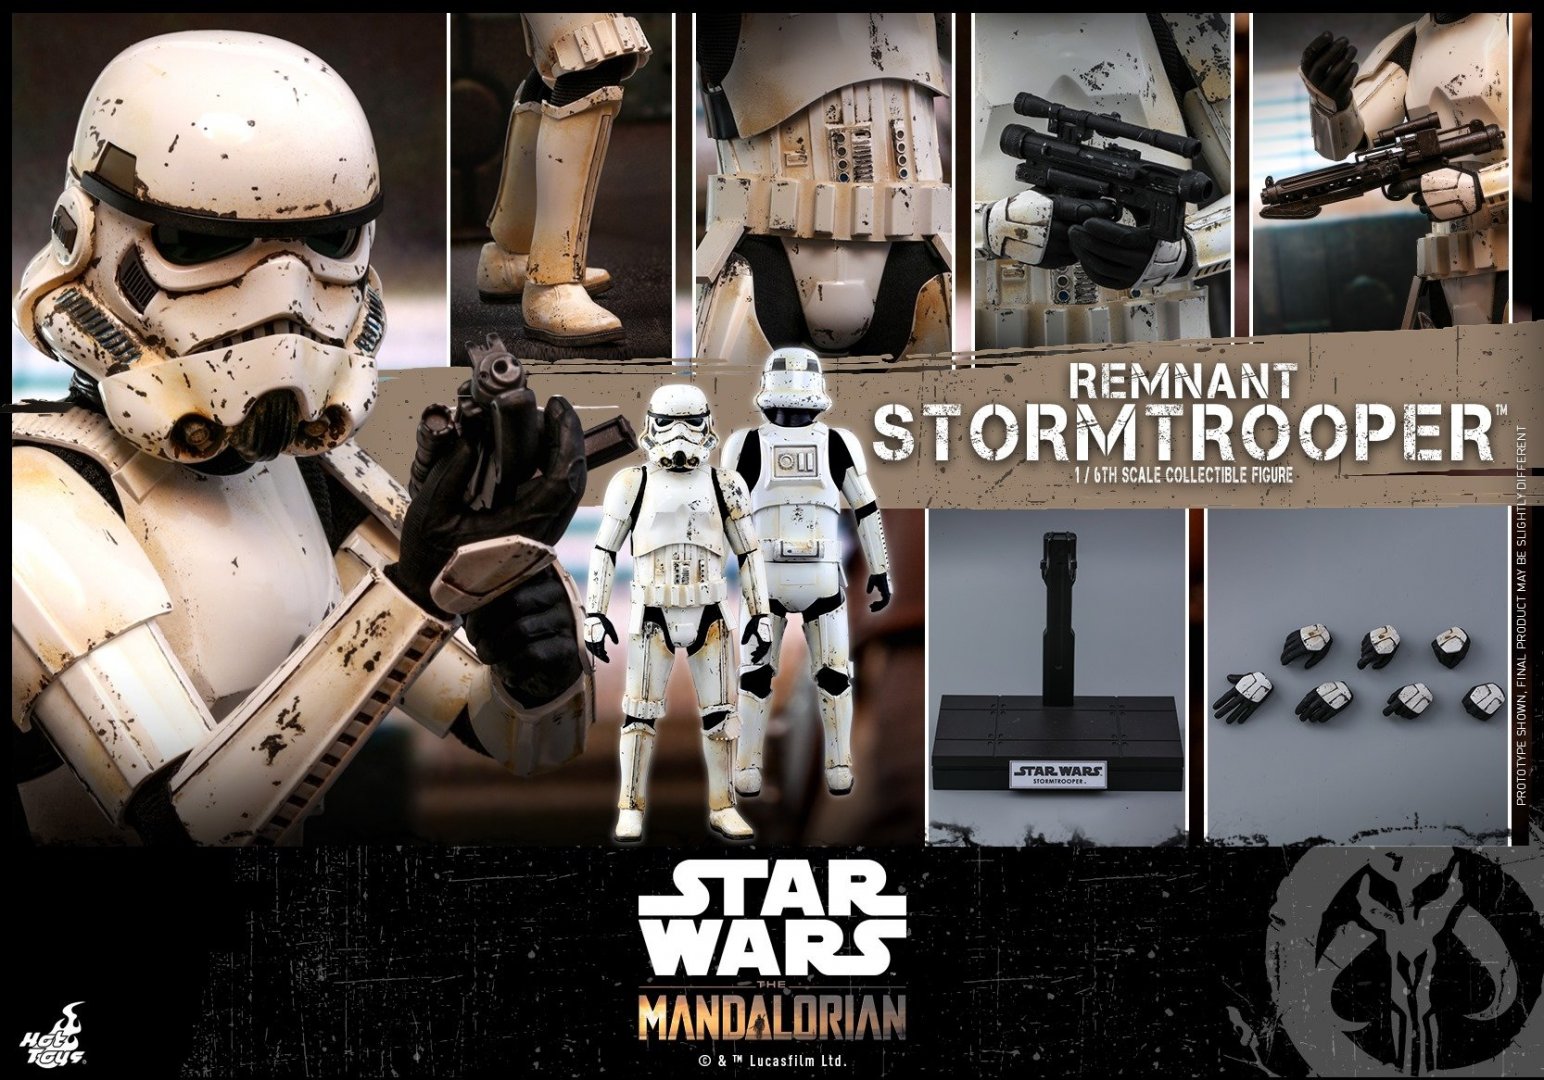 Hot-Toys-Remnant-Stormtrooper-014.jpg